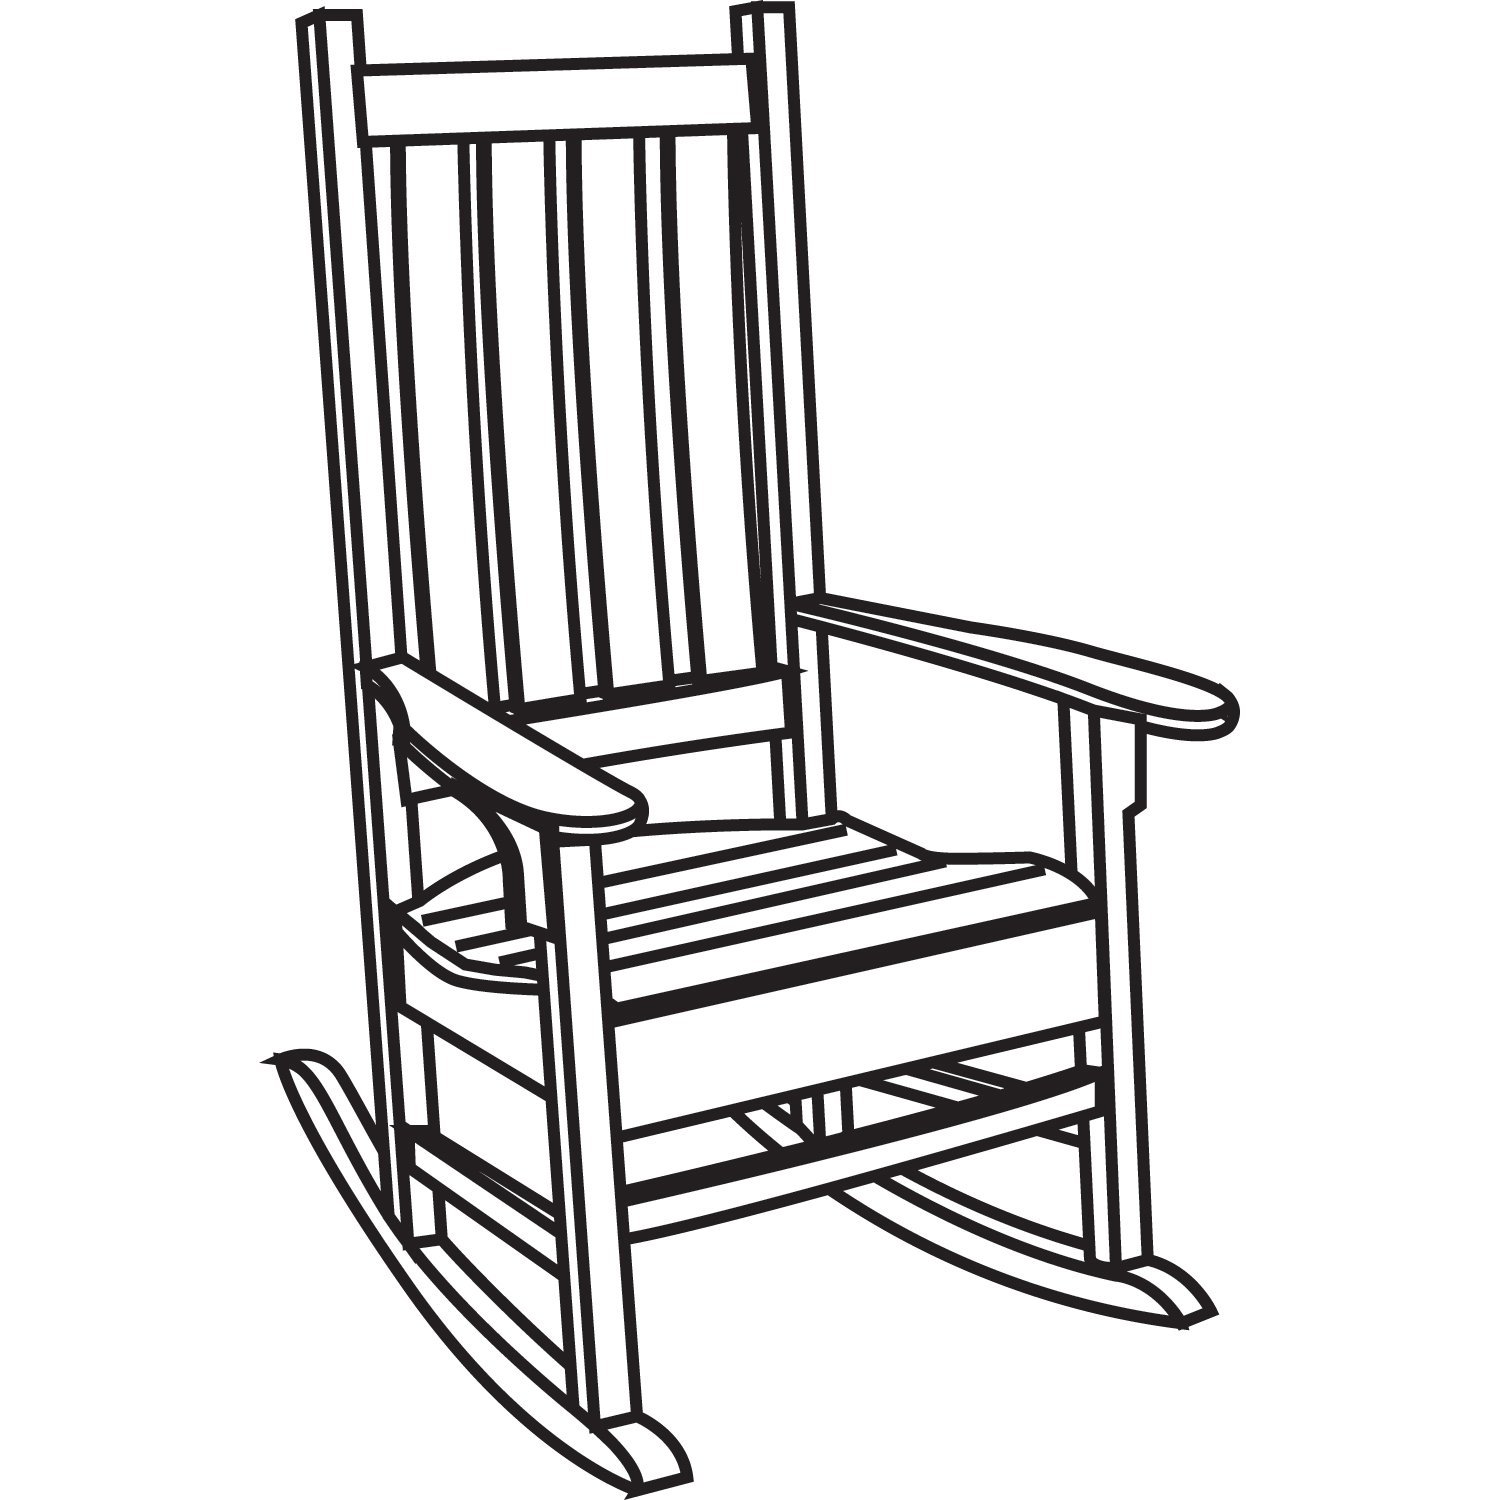 rocking chair: Vintage Rockin